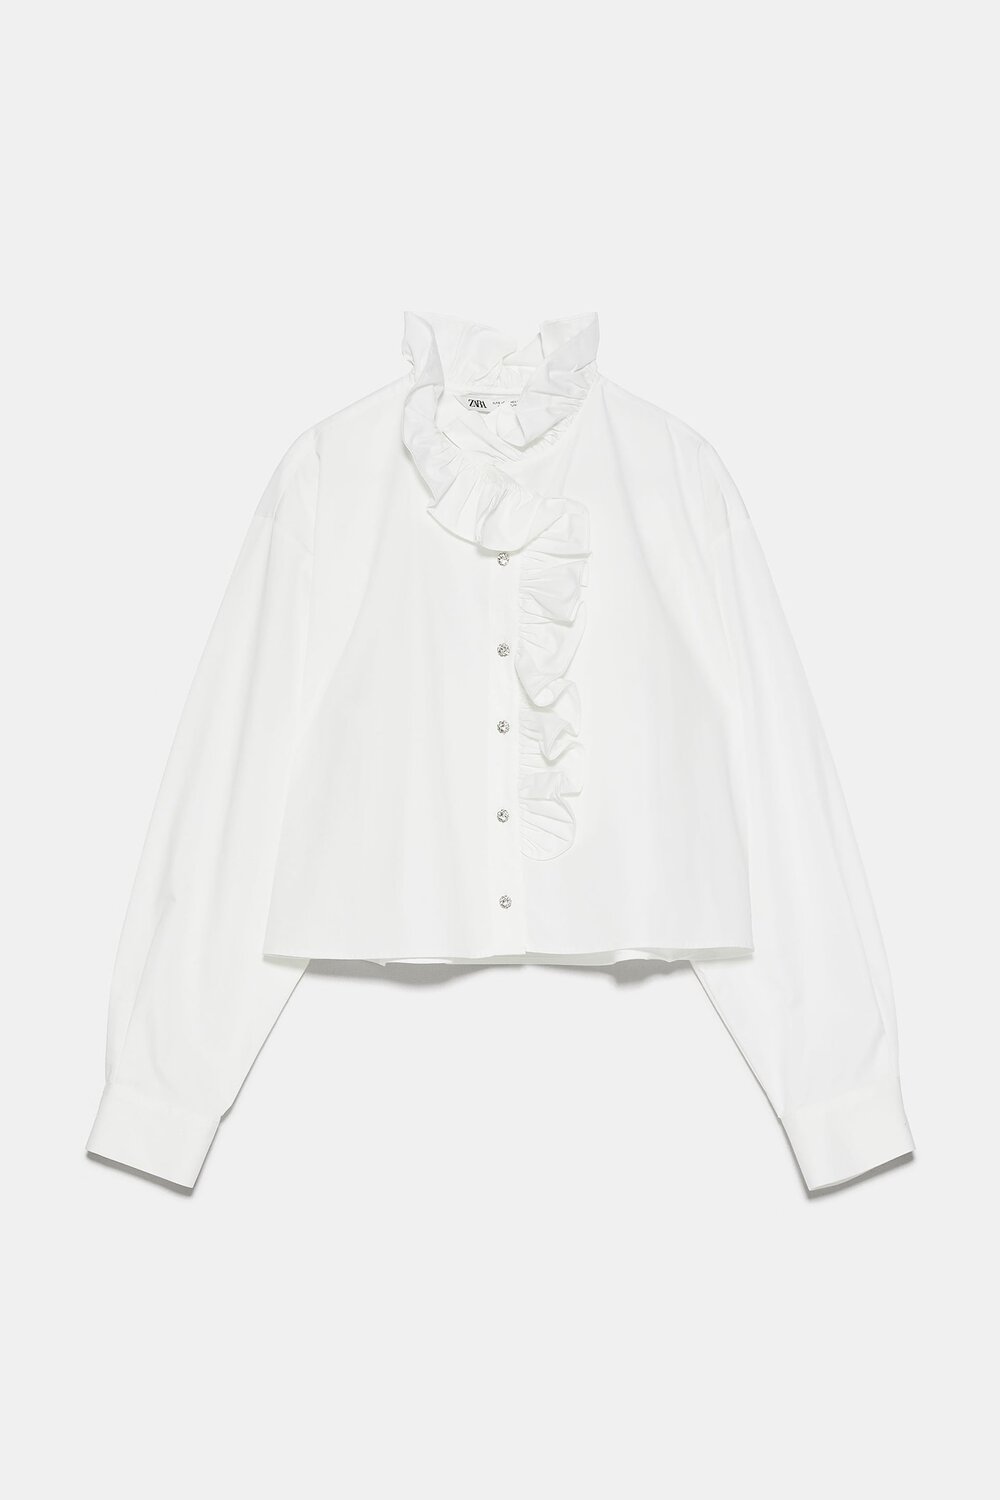 Zara, Ruffled Shirt, £29.99